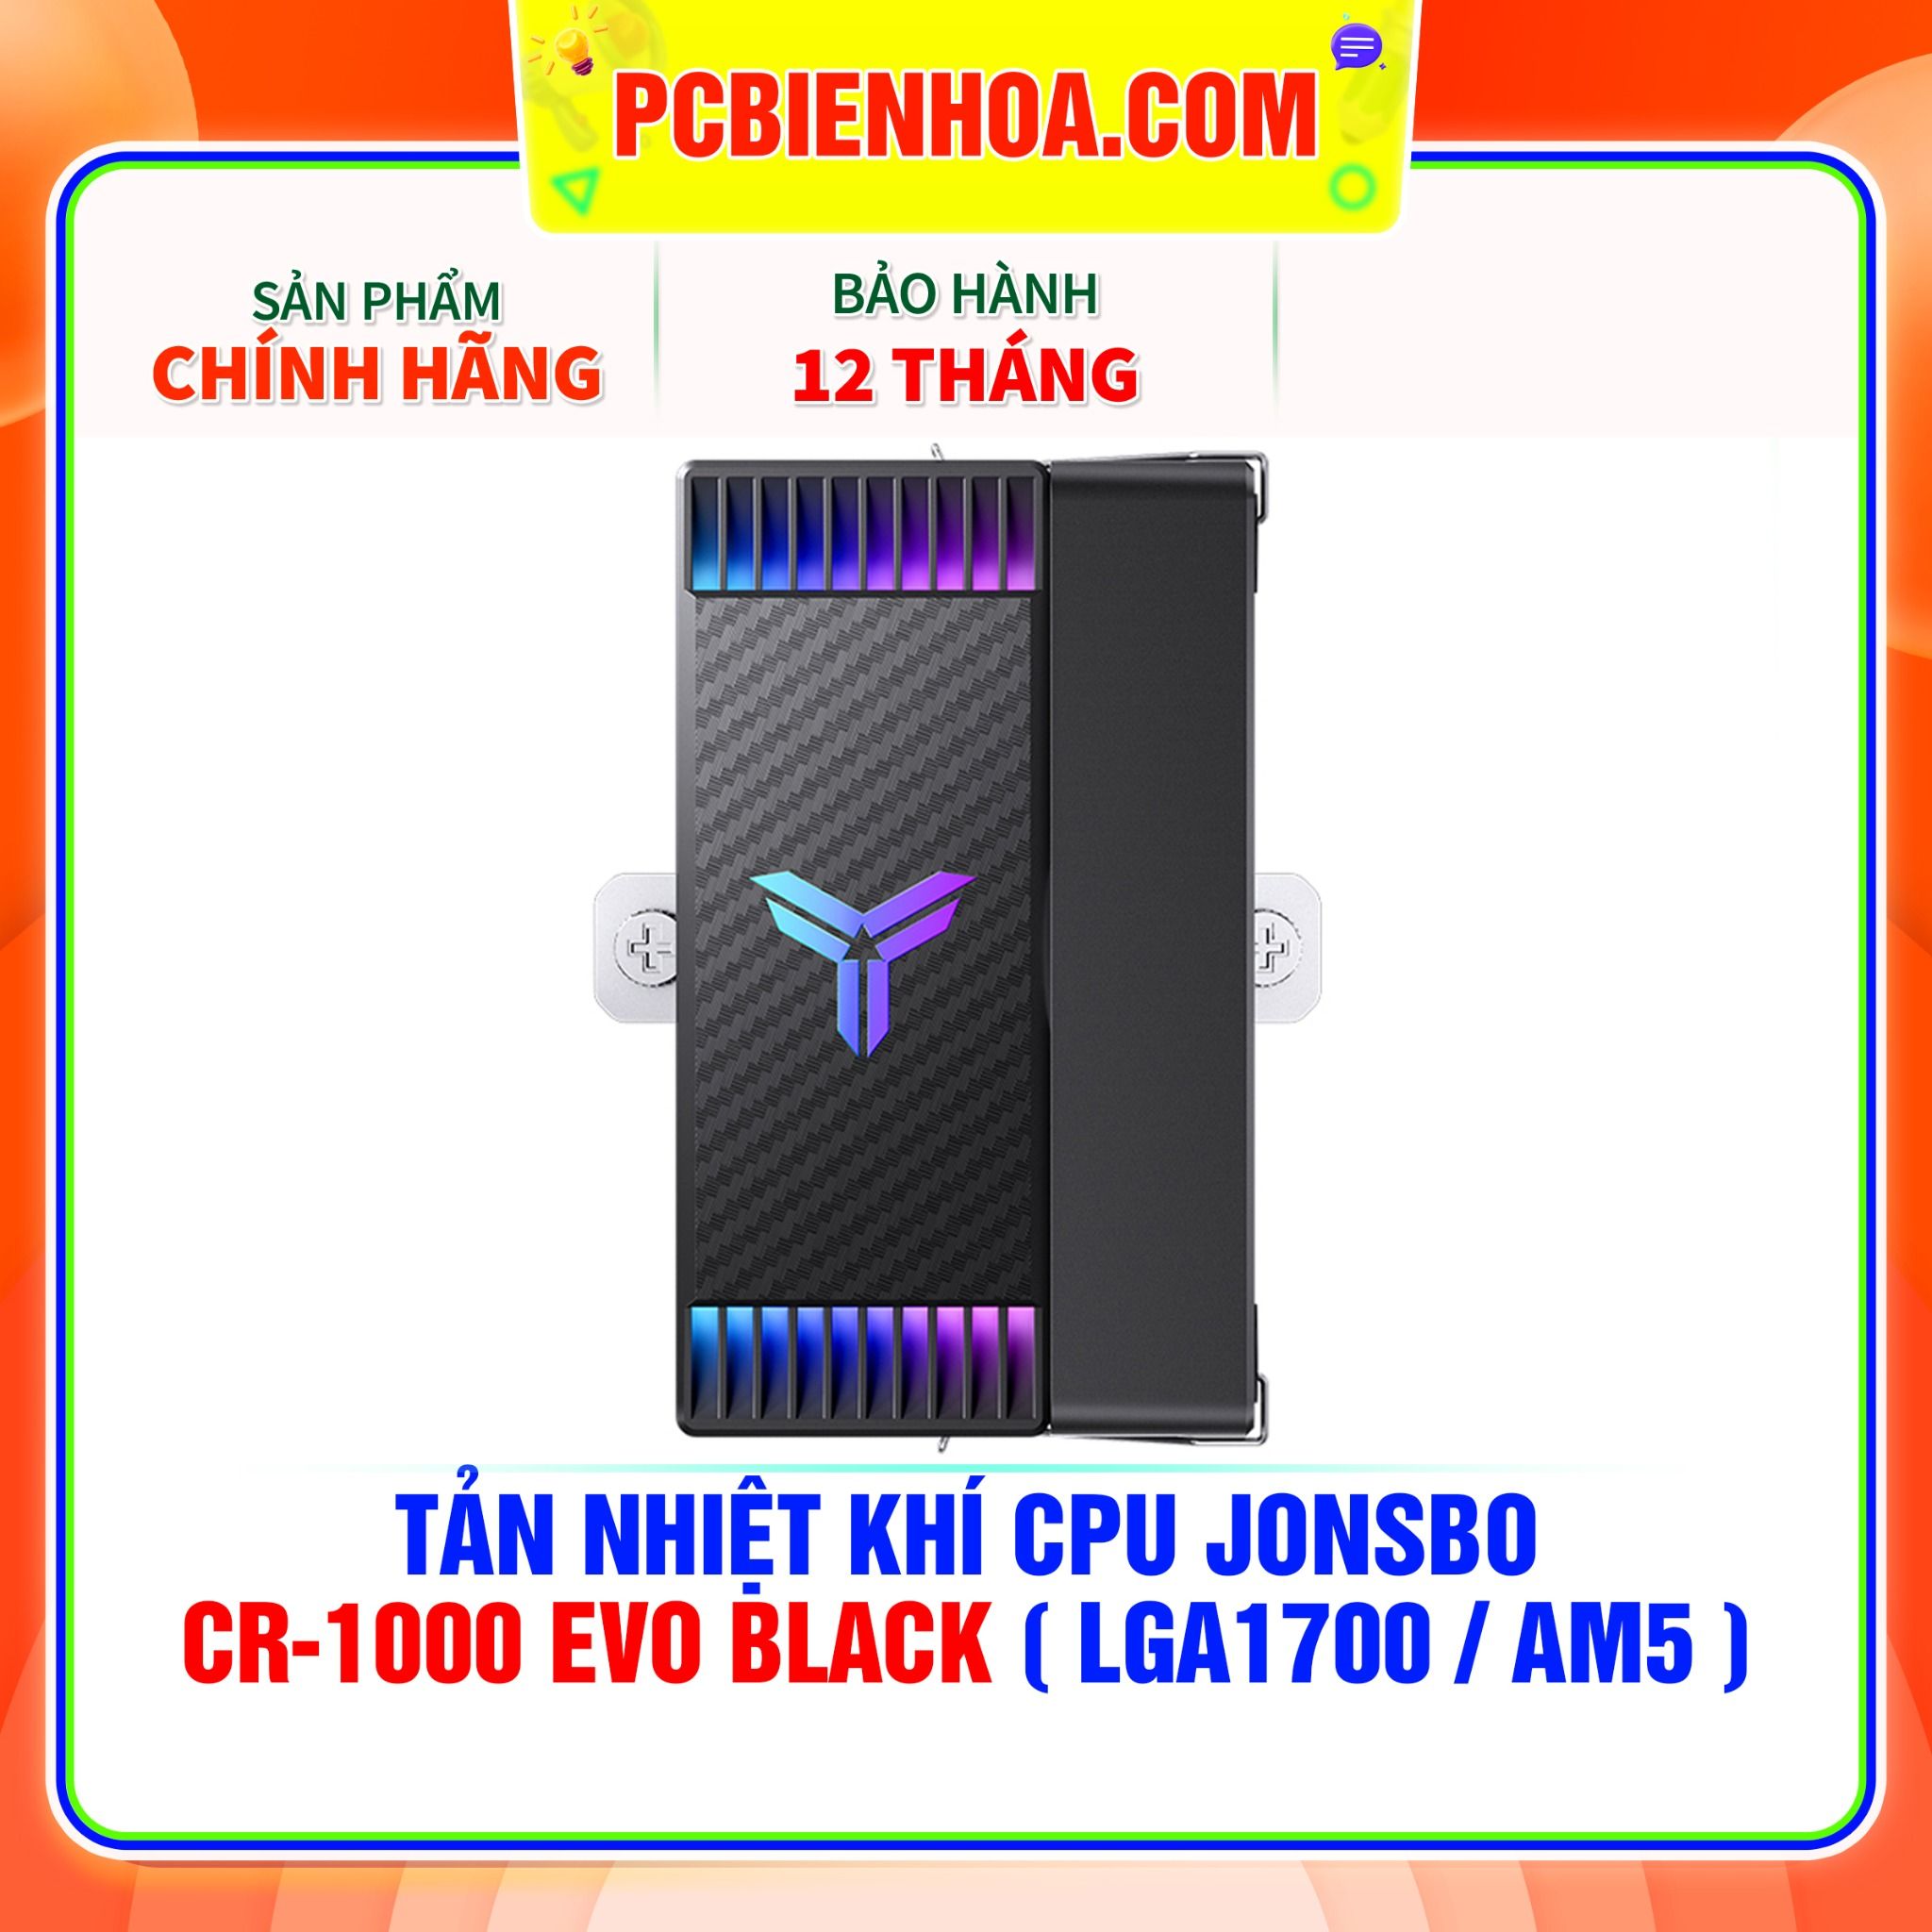  TẢN NHIỆT KHÍ CPU JONSBO CR-1000 EVO BLACK ( HỖ TRỢ SOCKET LGA1700 / AM5 ) 